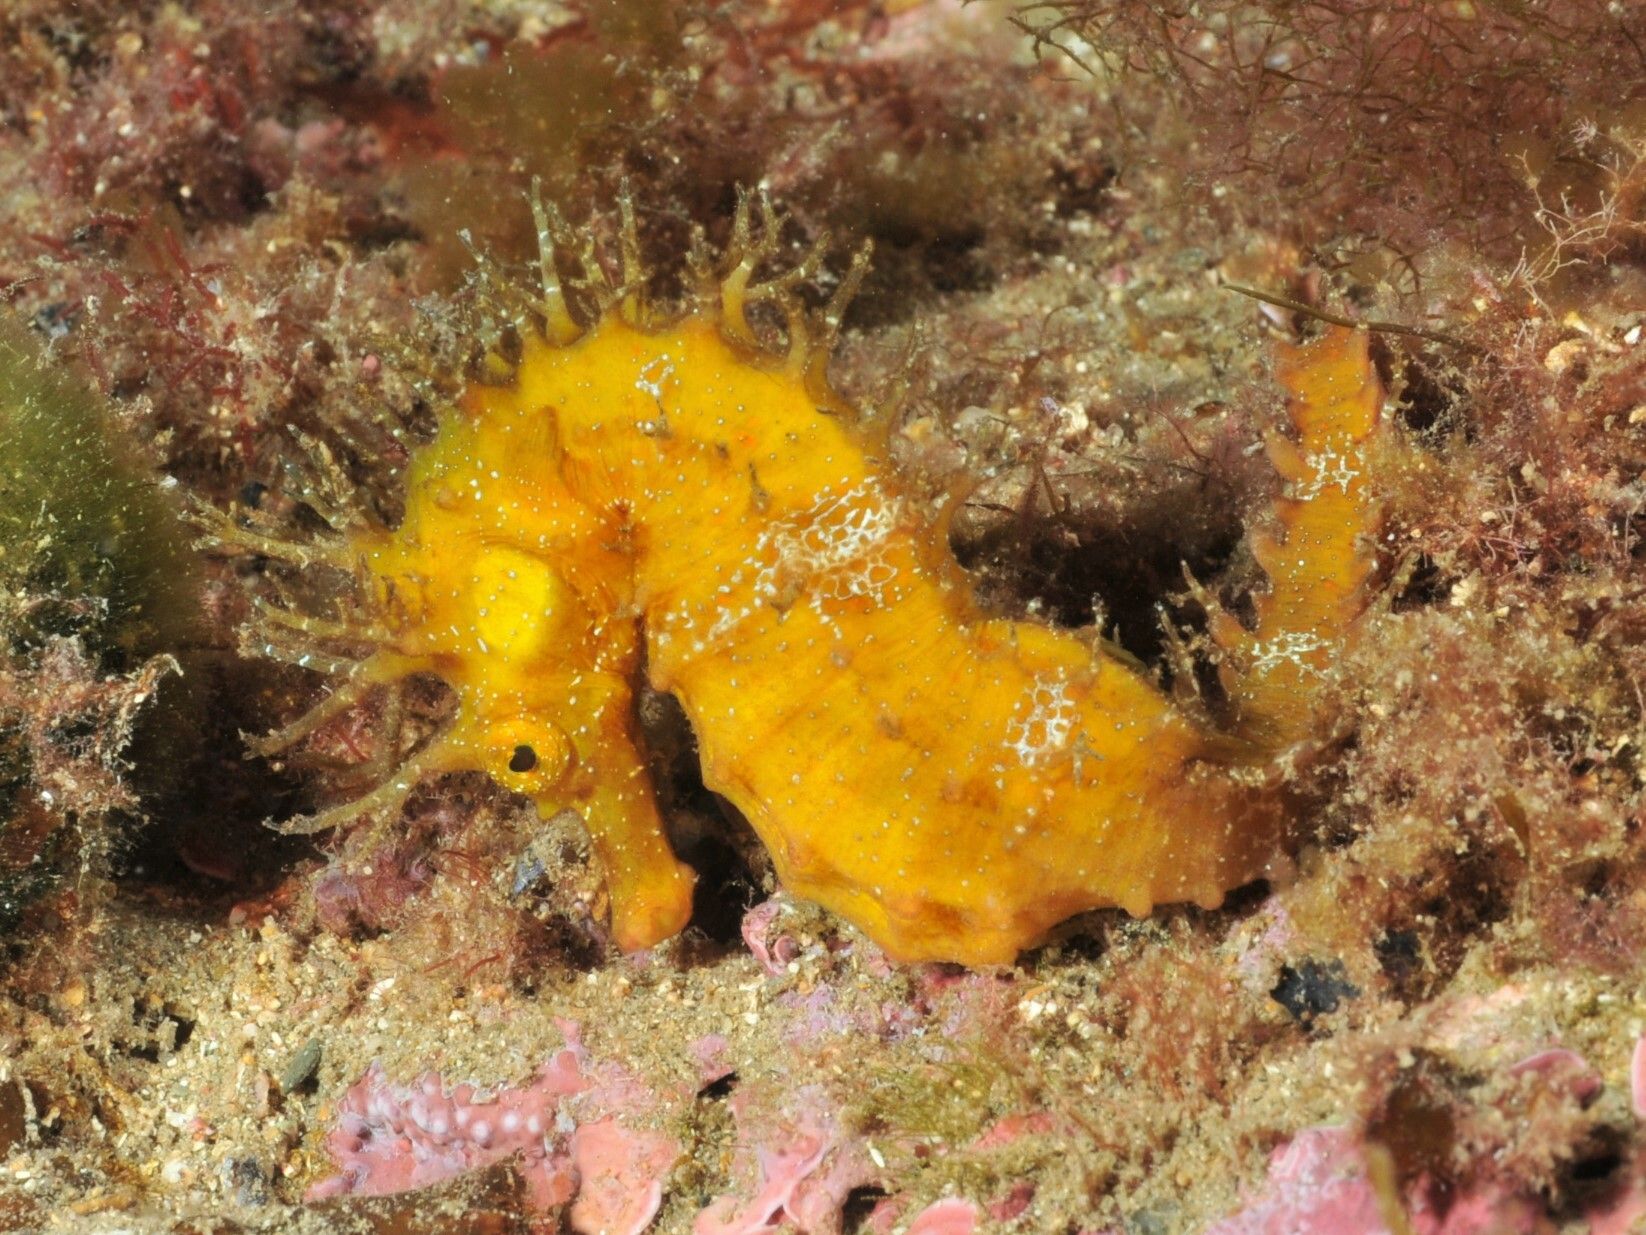 Hippocampus-guttula vist per Observadors del Mar.